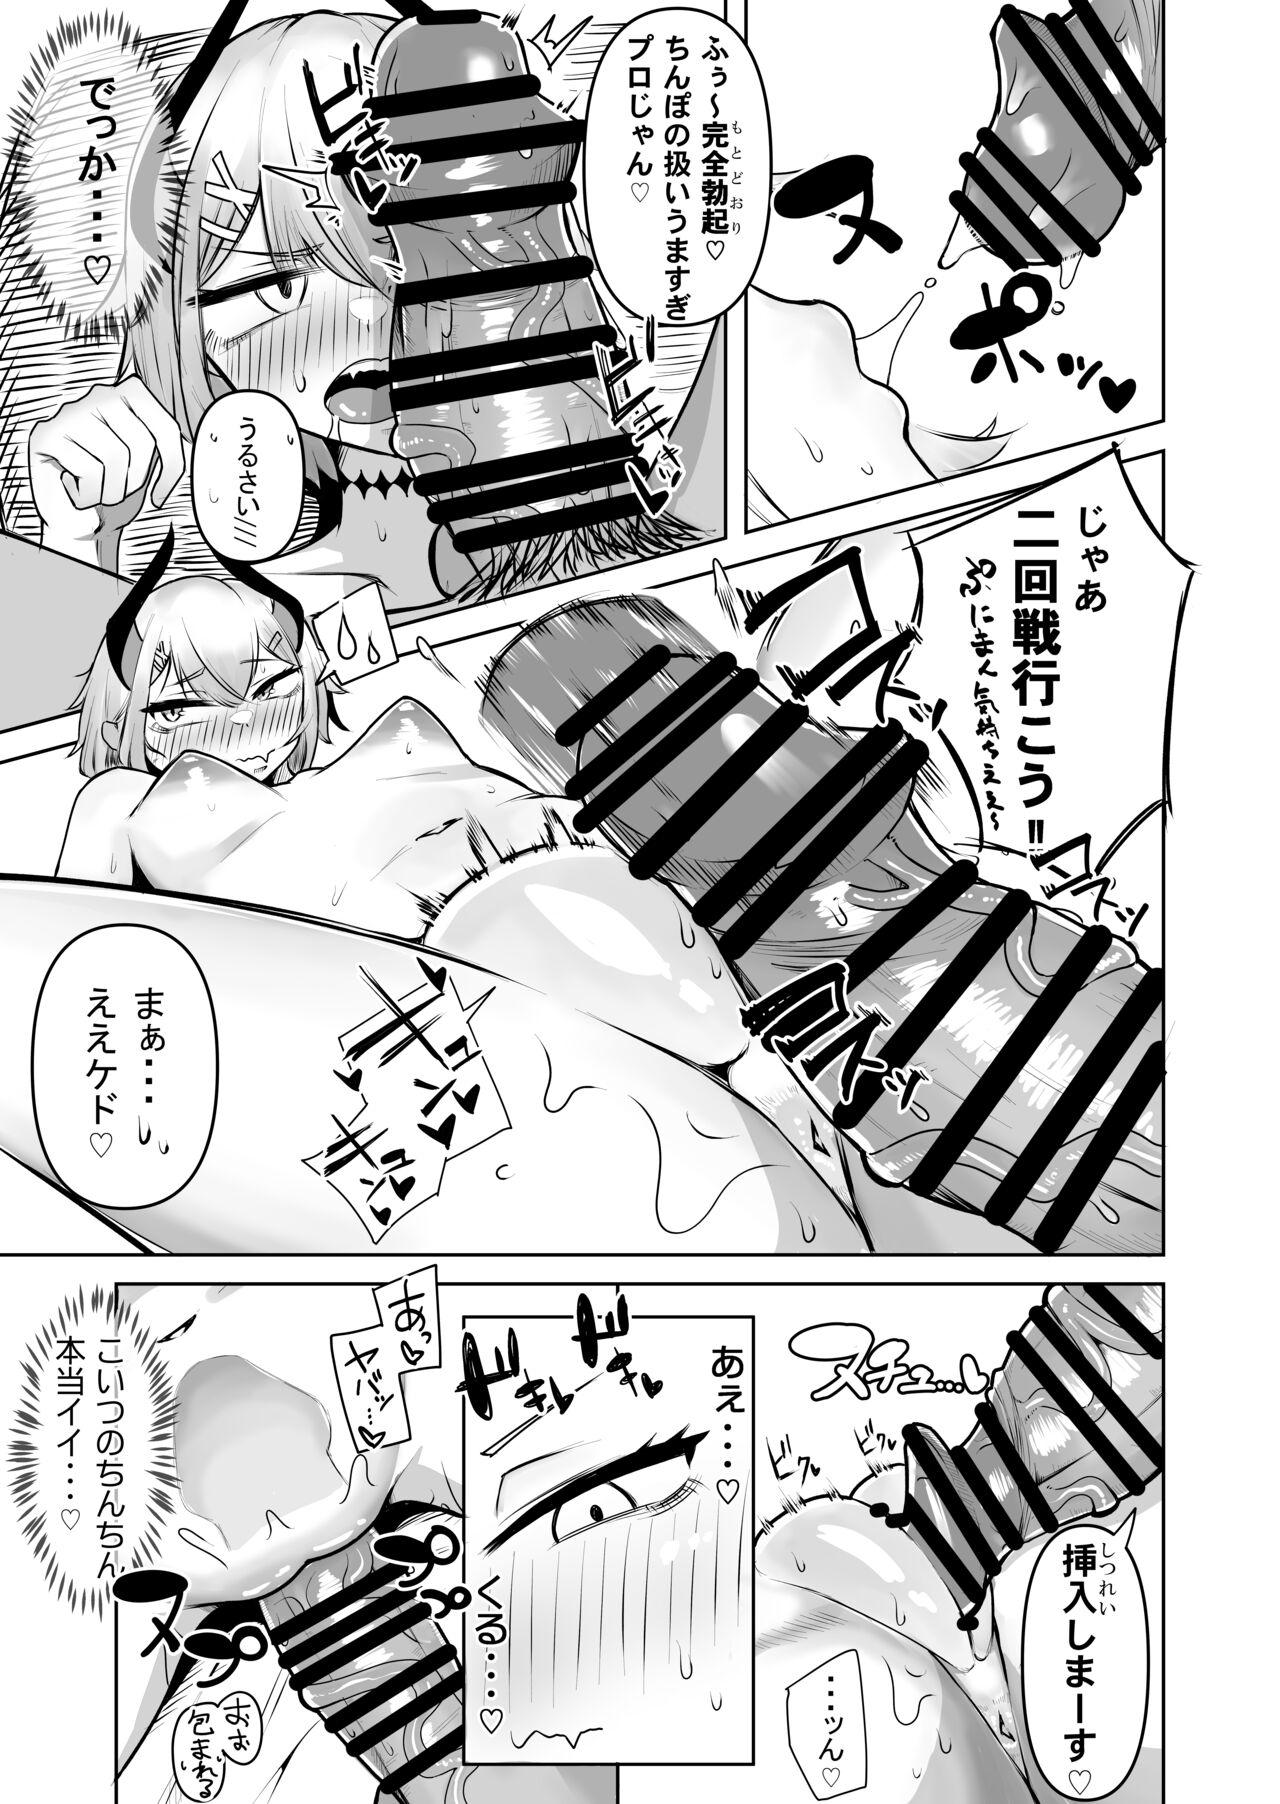 1080p Levi-chan to no natsu - Nijisanji Money Talks - Page 9